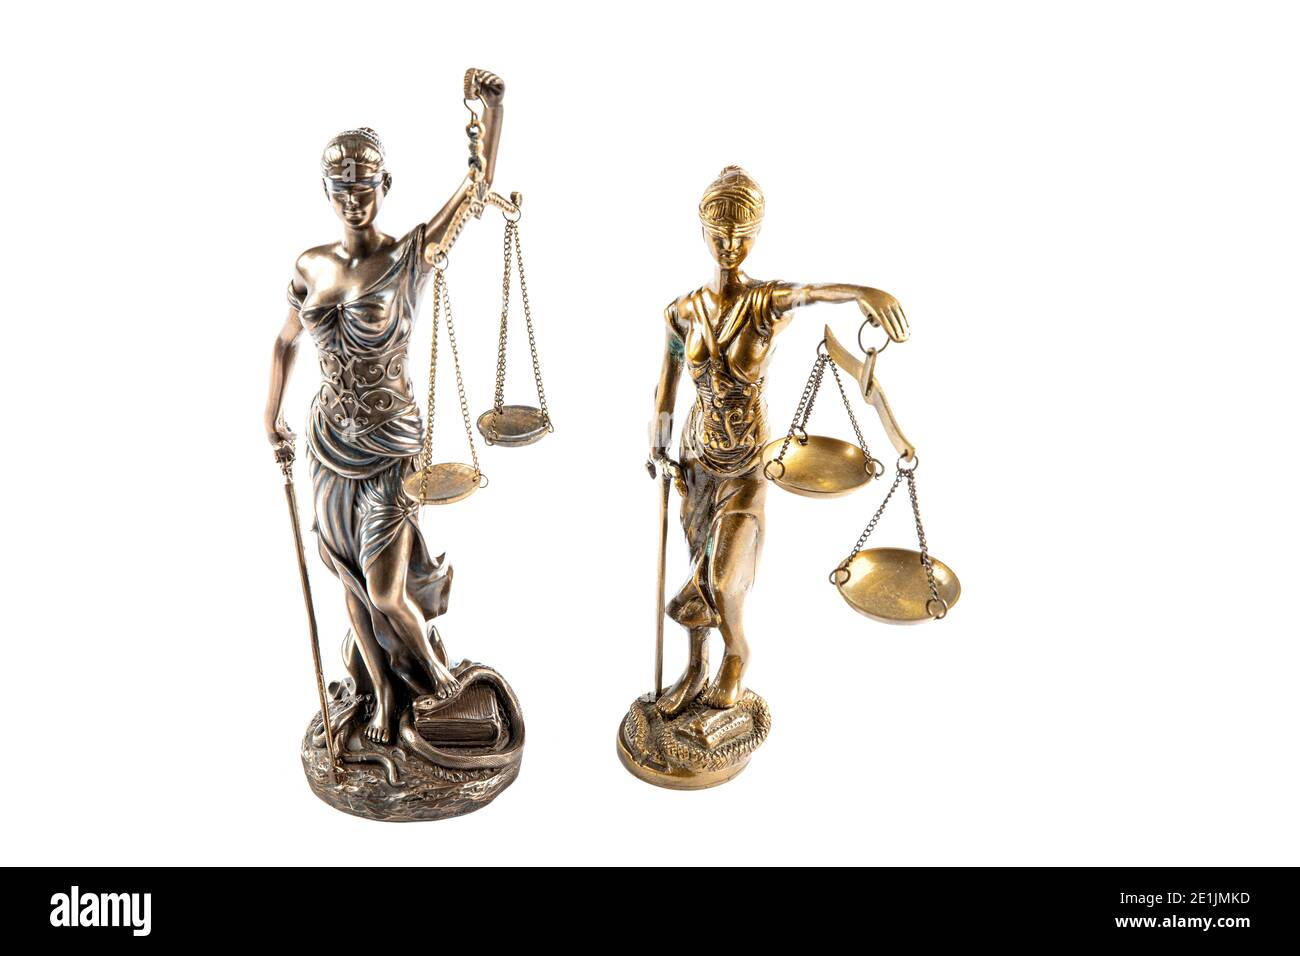 Die Statue der Gerechtigkeit - Lady Justice oder Iustitia / Justitia die römische Göttin der Gerechtigkeit. Rechtsrecht Konzept Bild. Stockfoto